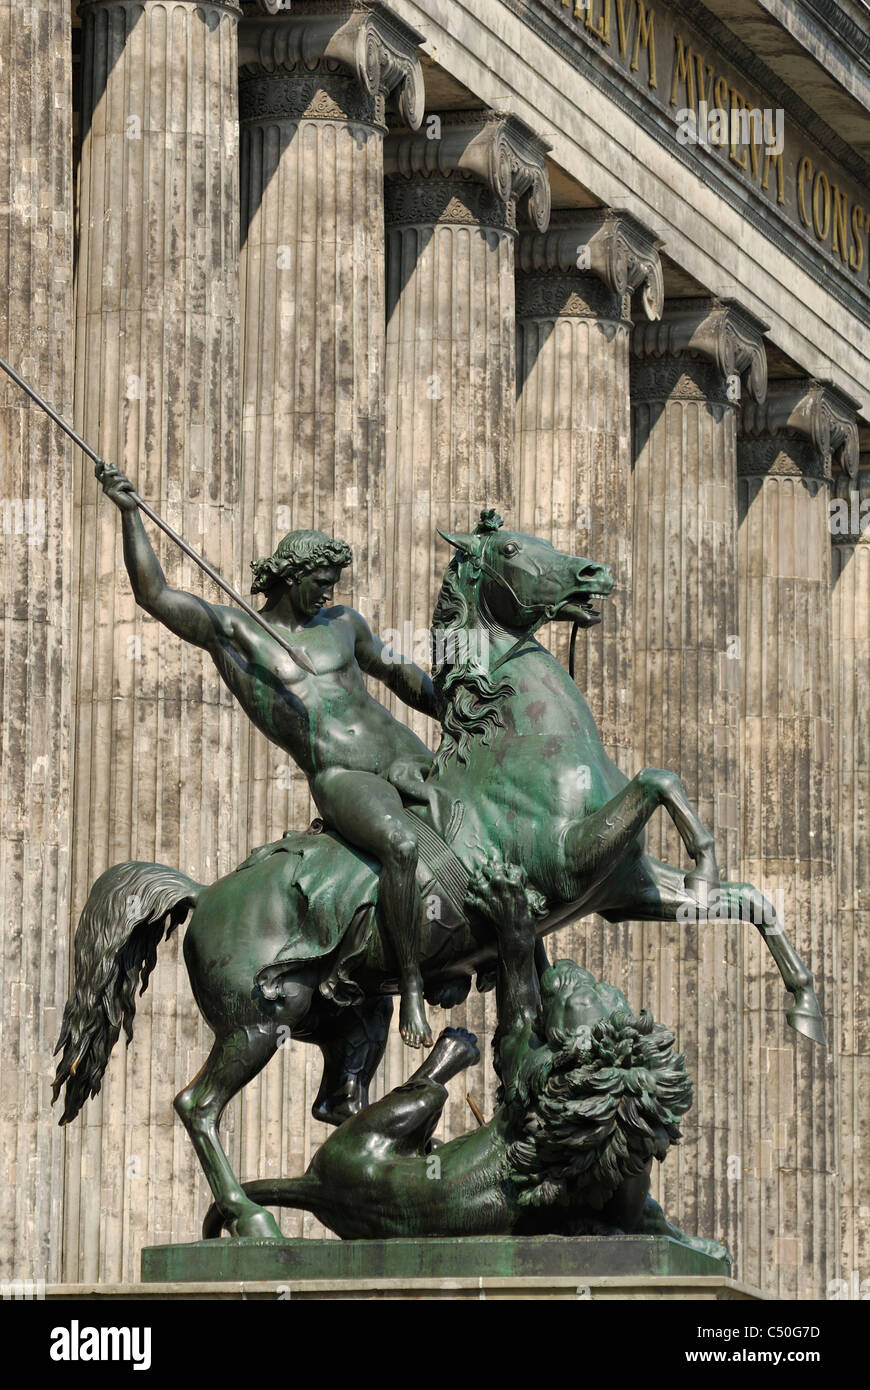 Berlín. Alemania. "Löwenkämpfer', estatua de bronce del león fuera de combate el Altes Museum, Lustgarten, Mitte. Foto de stock